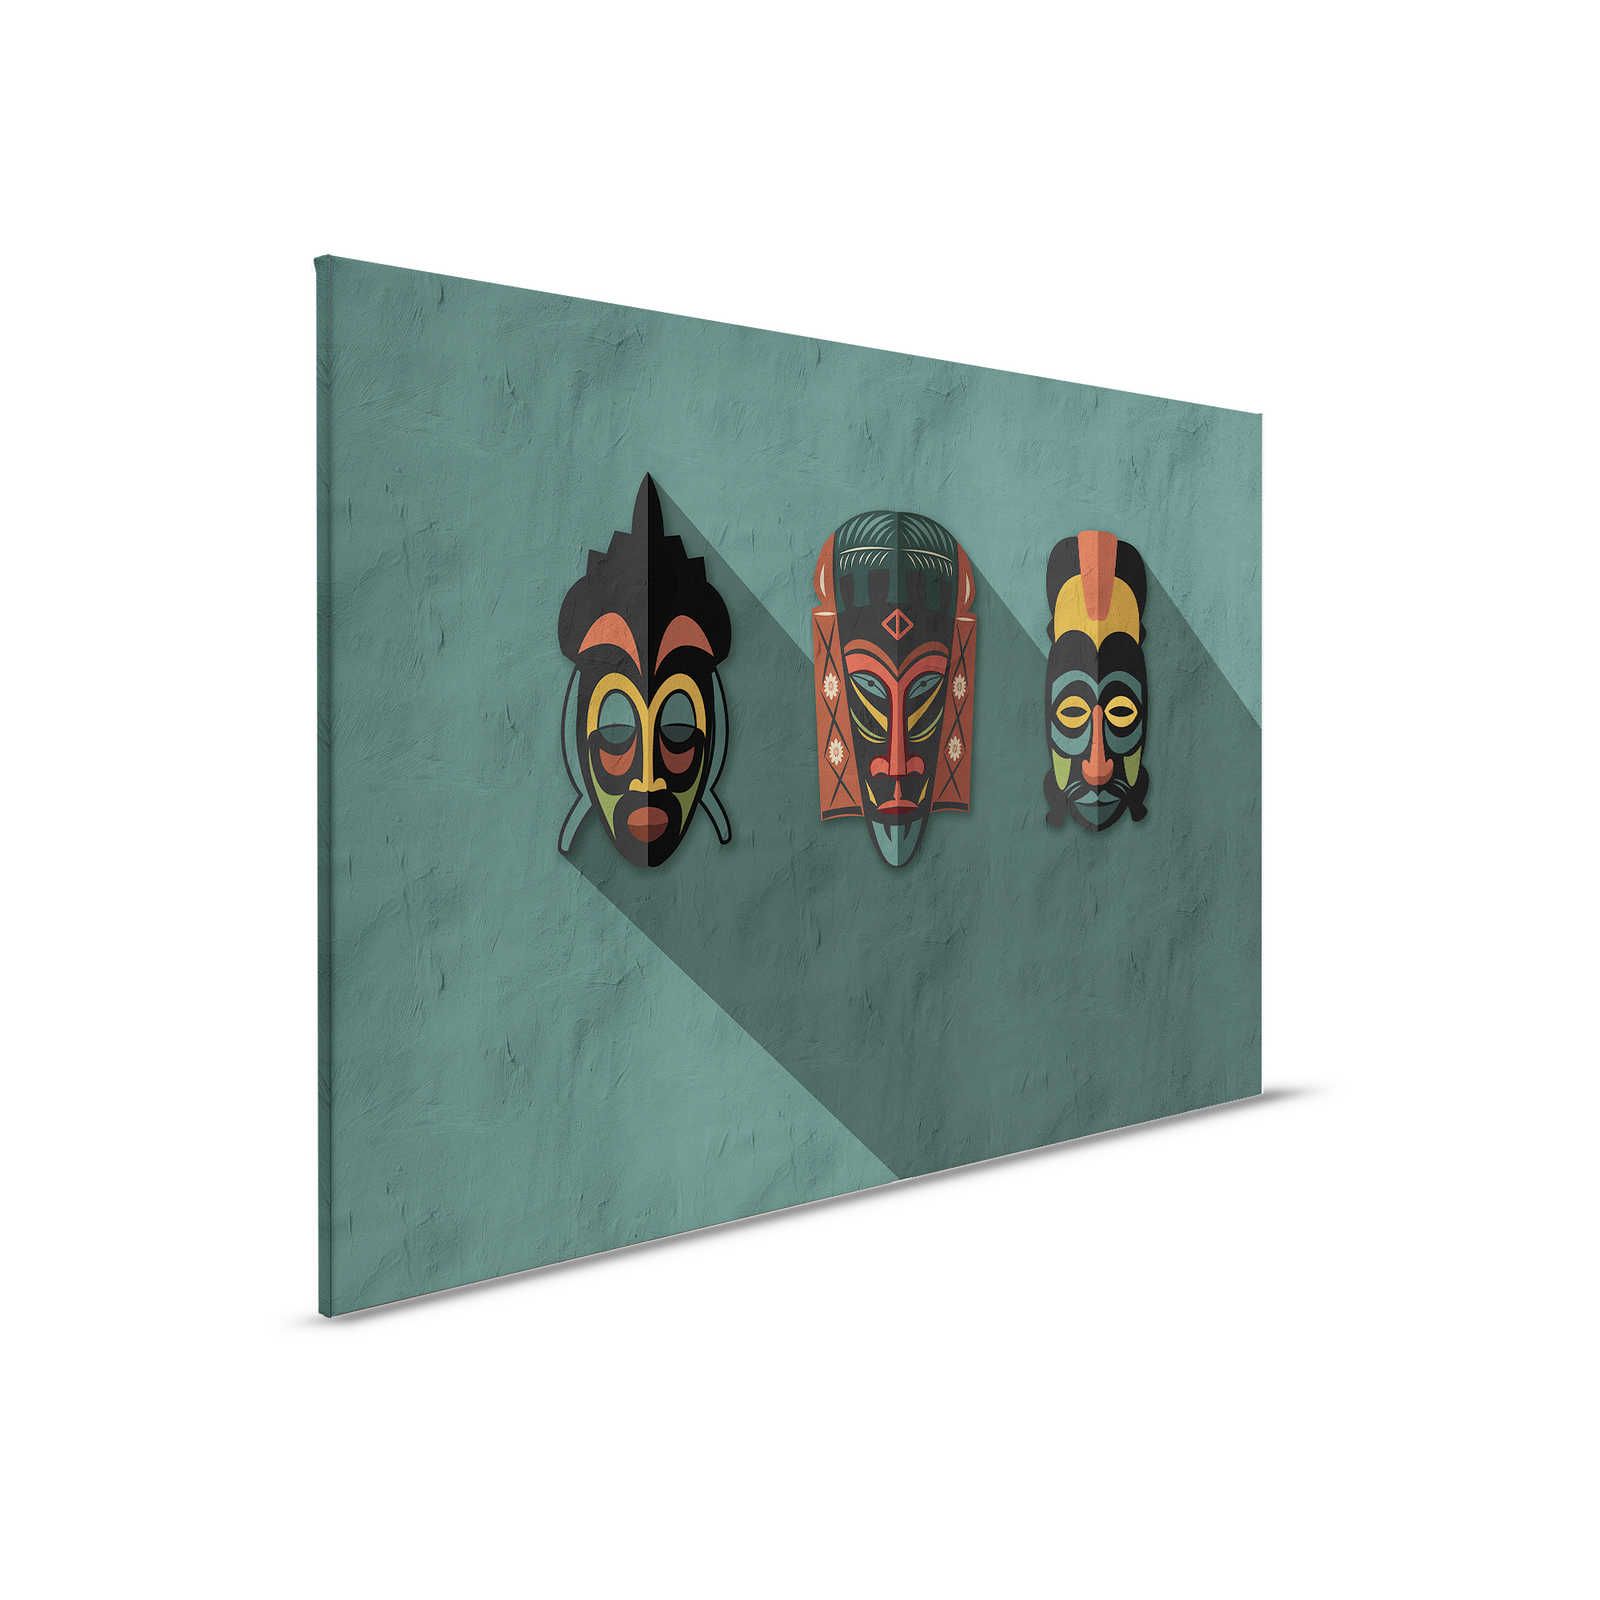         Zulu 3 - Leinwandbild Petrol Afrika Masken Zulu Design – 0,90 m x 0,60 m
    